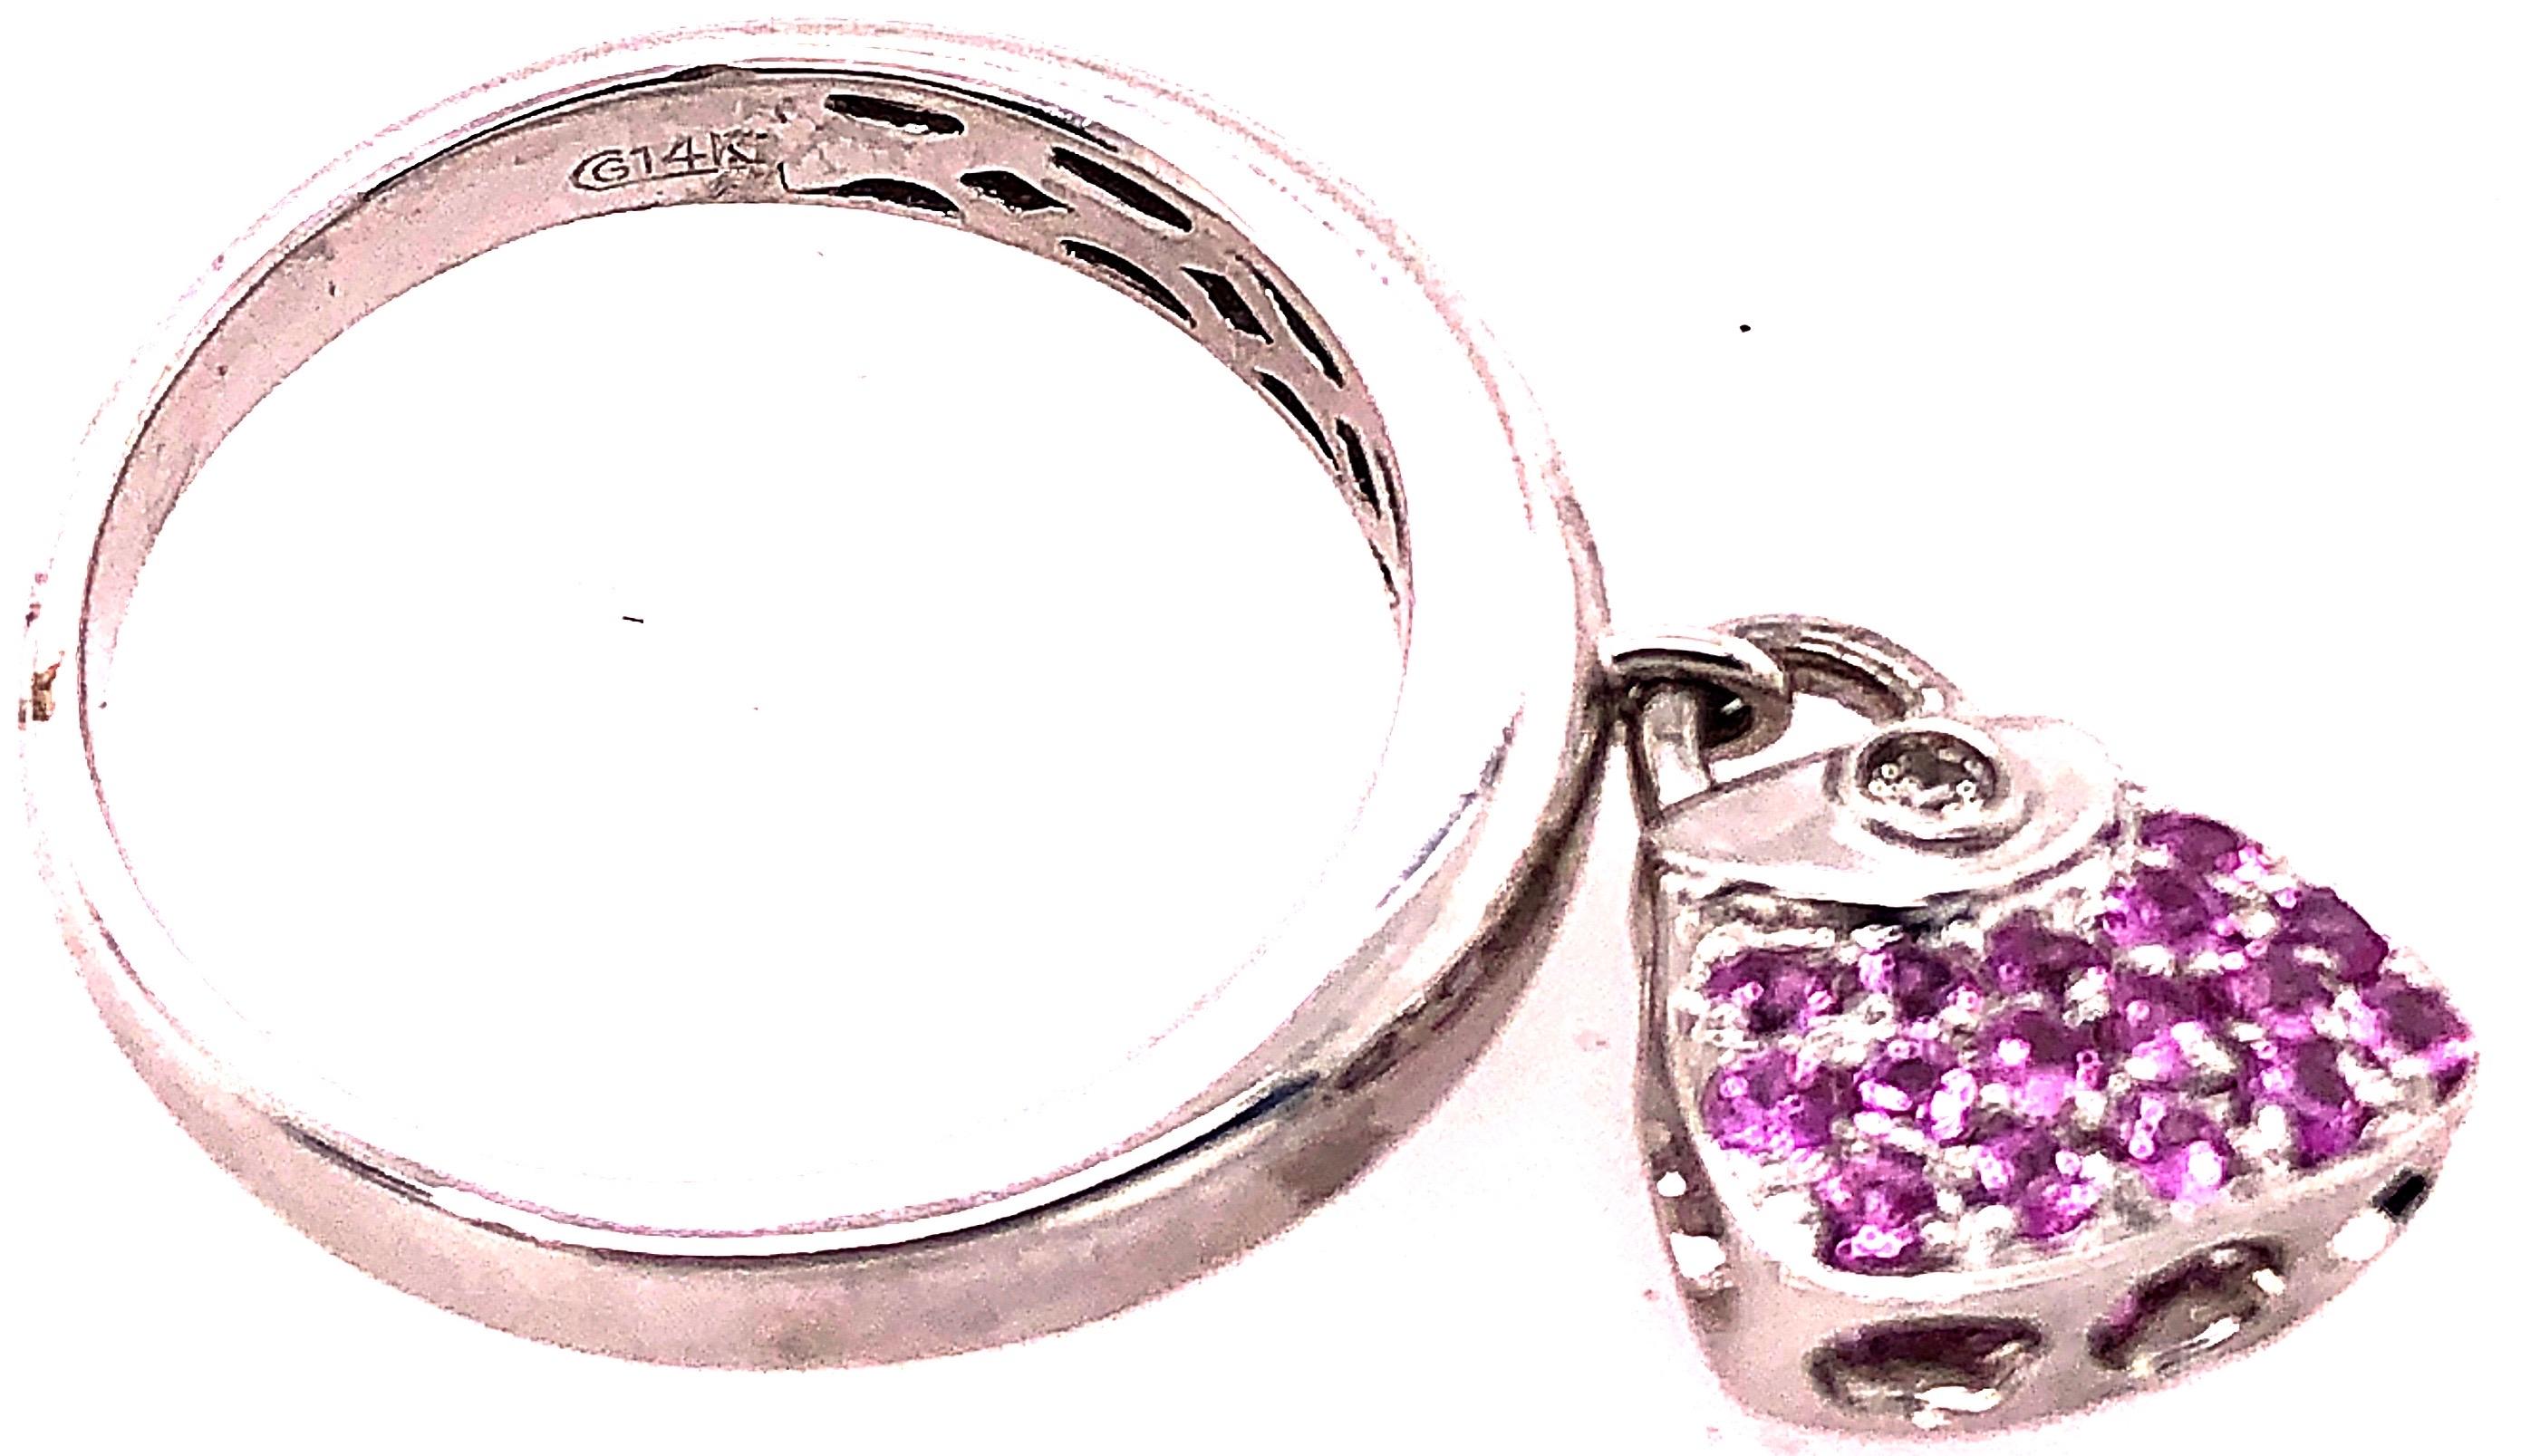 Women's or Men's 14 Karat White Gold Fashion Ring with Semi Precious Stones Charm